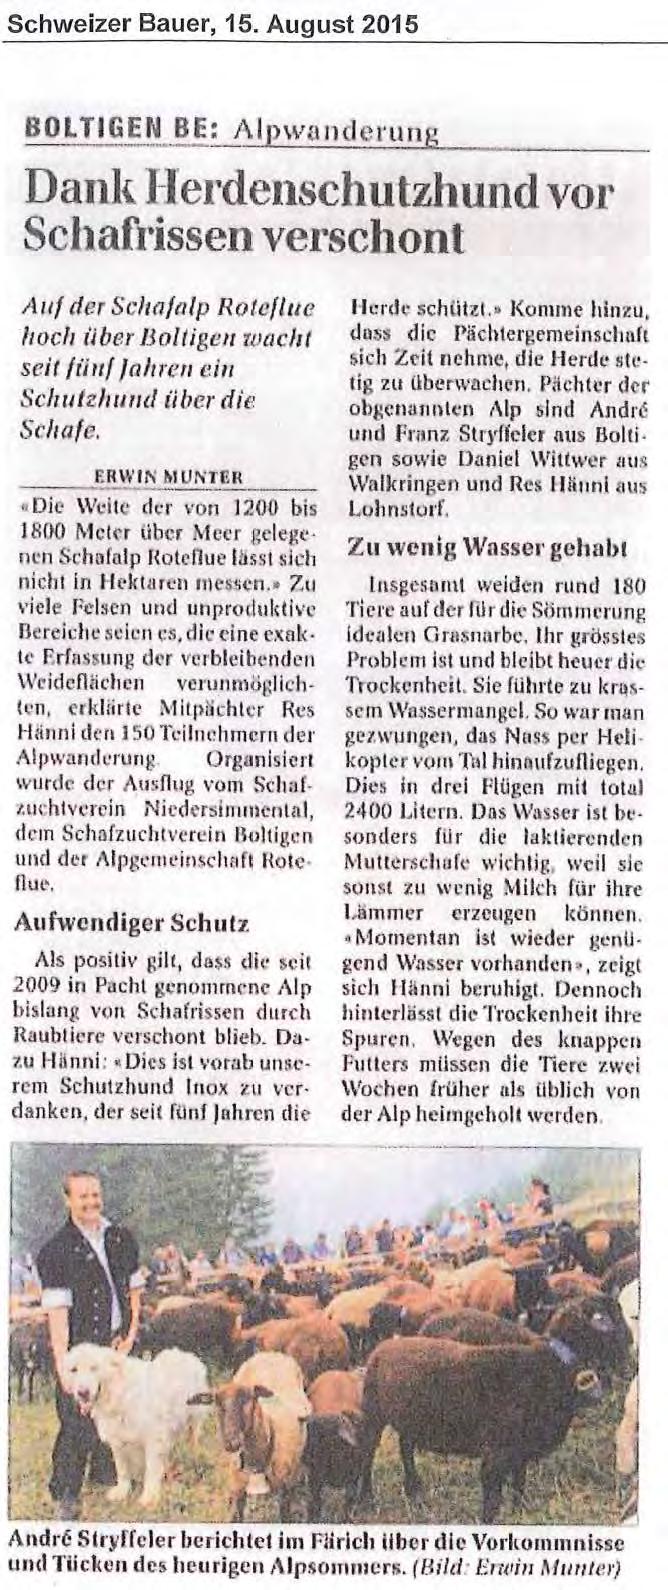 Jahresbericht 215; Jagdinspektorat des Kantons Bern - 56-1.1.3 Artikel im Schweizer Bauer vom 15.